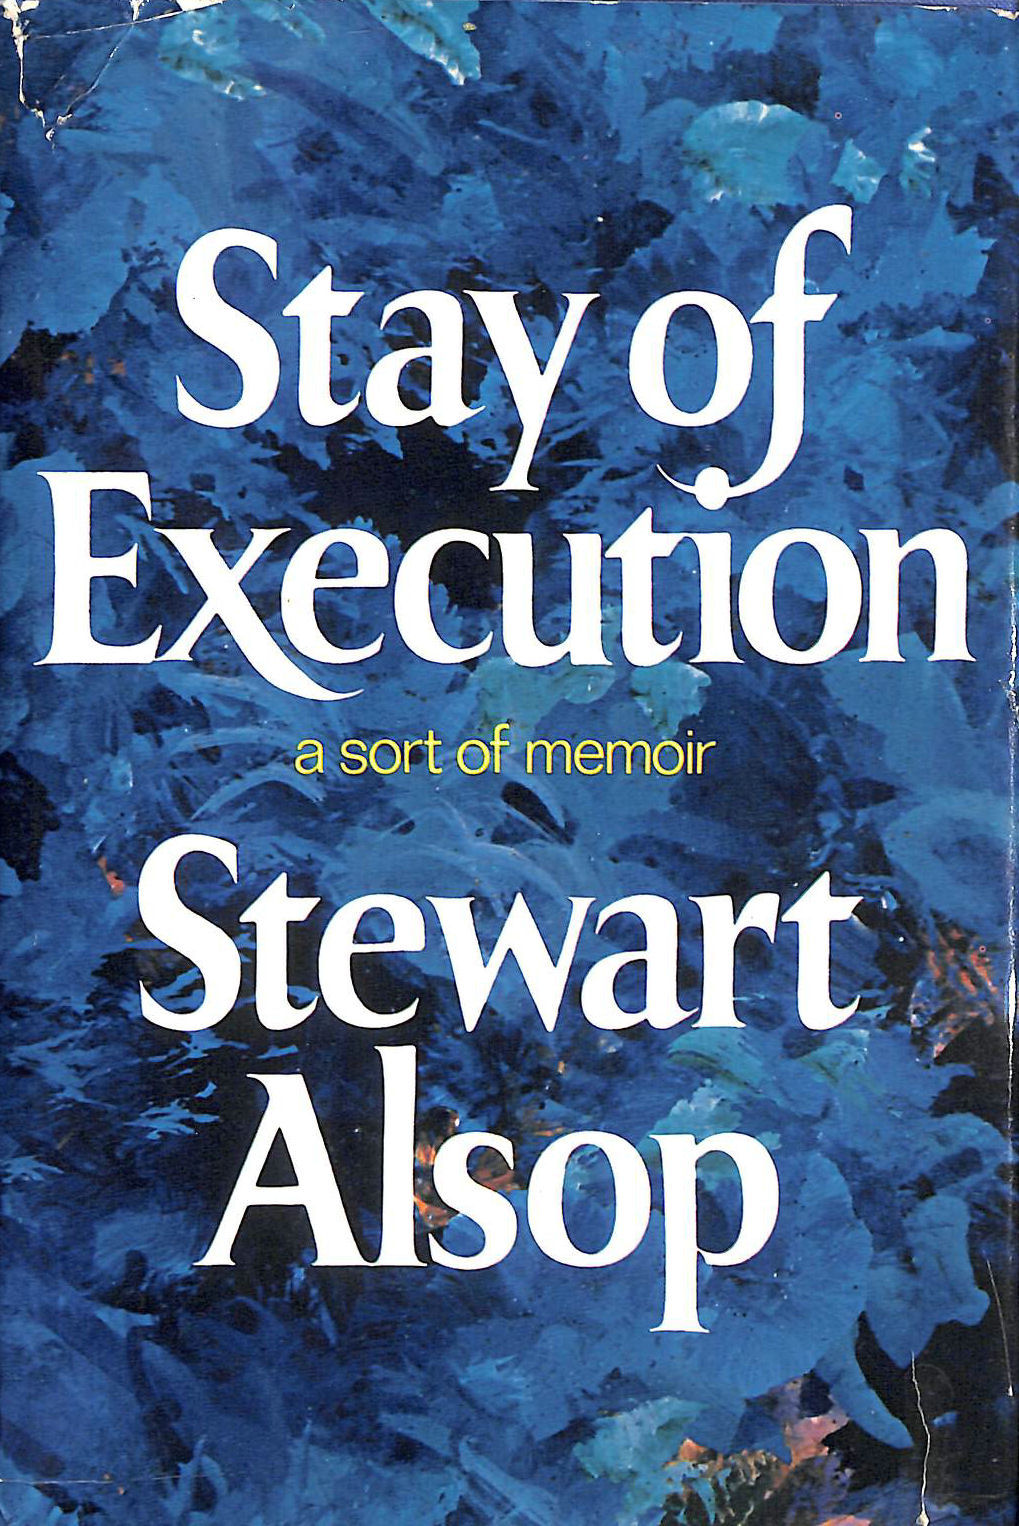 STEWART ALSOP - Stay of Execution: A Sort of Memoir